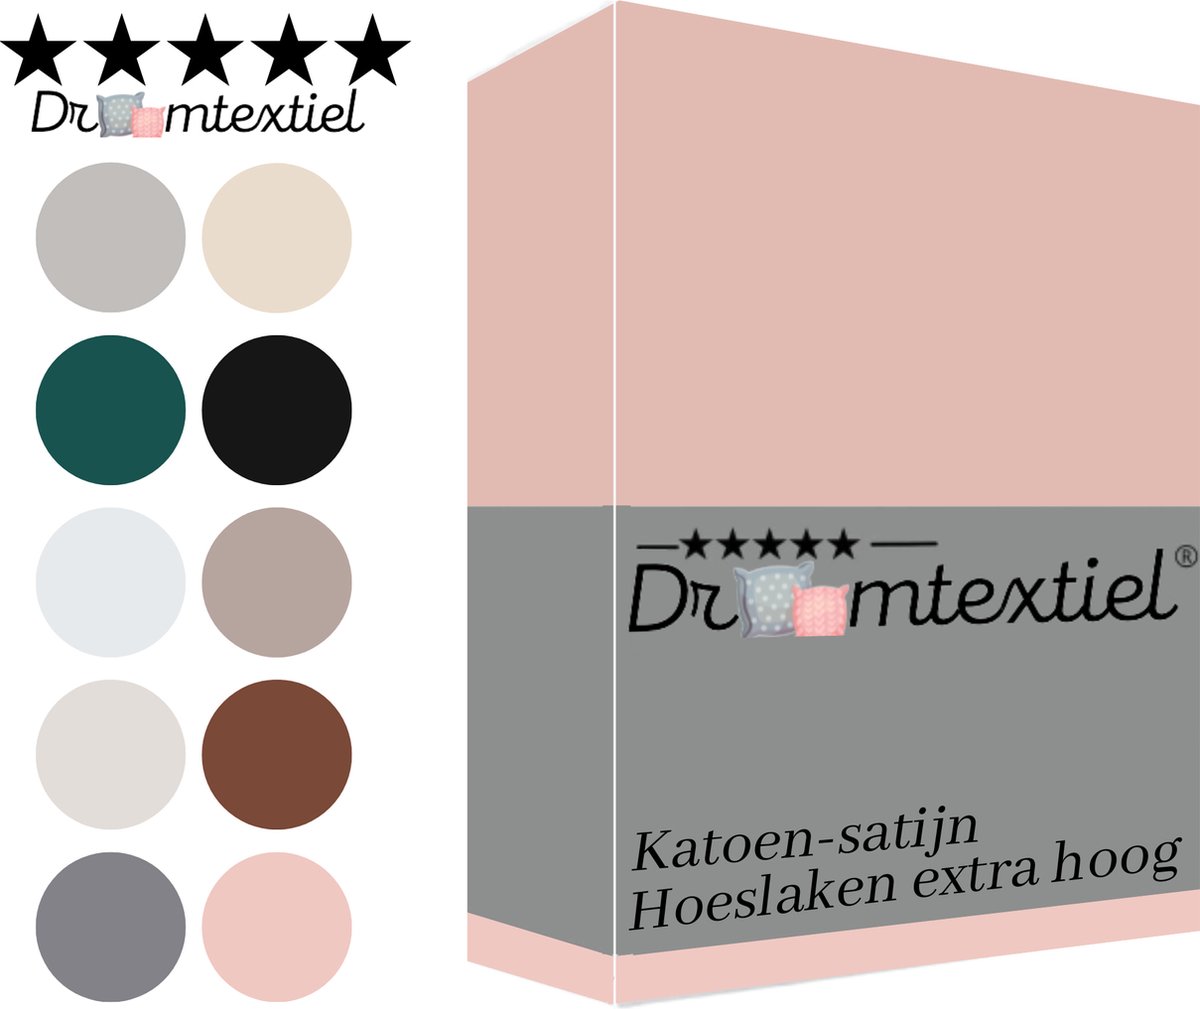 Droomtextiel Katoen - Satijnen Hoeslaken Oud Roze Lits-Jumeaux - 200x220 cm - Hoogwaardige Kwaliteit - Super Zacht - Hoge Hoek -